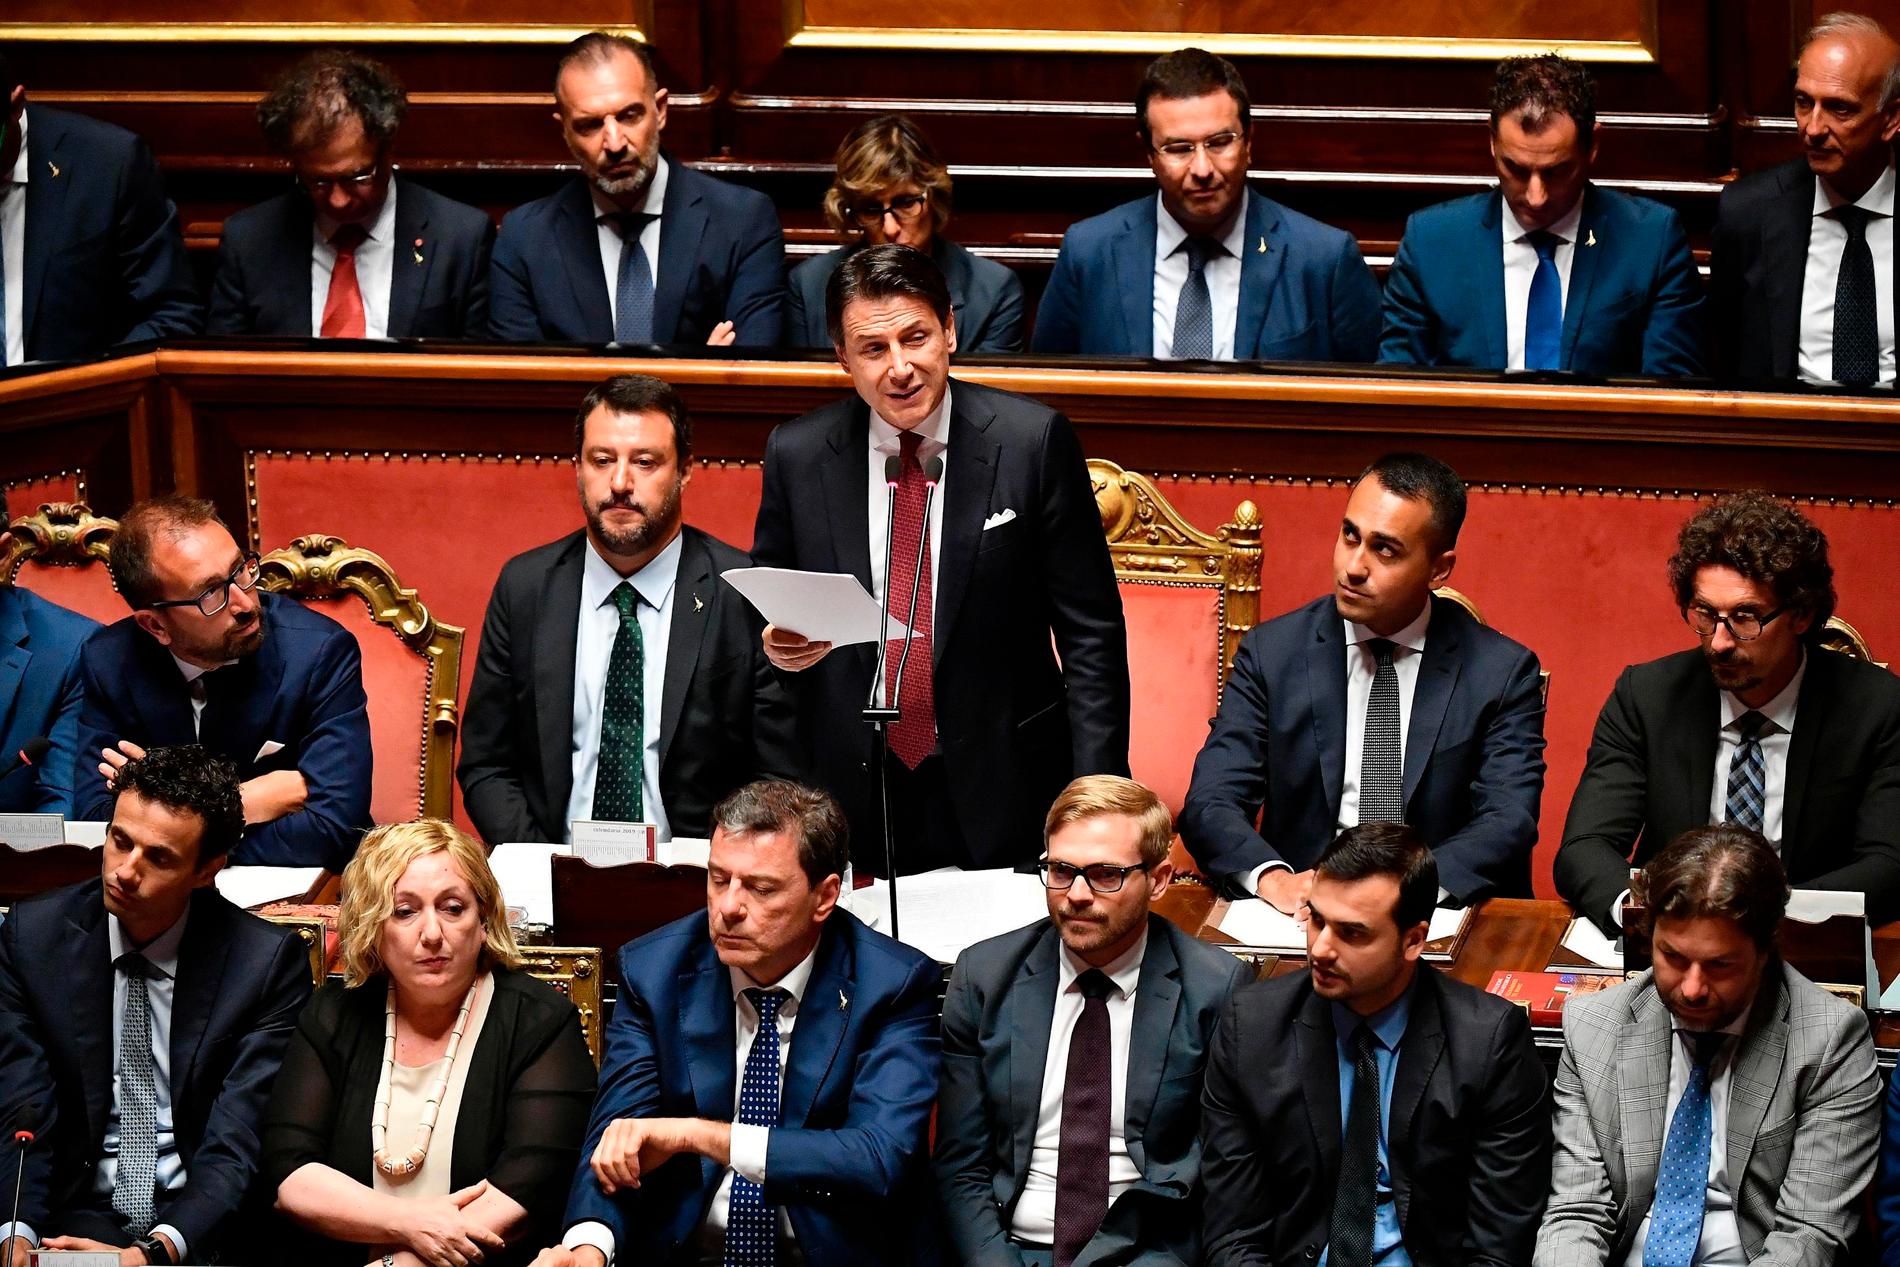 Inrikesminister, vice premiärminister och Legaledaren Matteo Salvini satt strax till vänster om premiärminister Giuseppe Conte när han meddelade att han avgår.